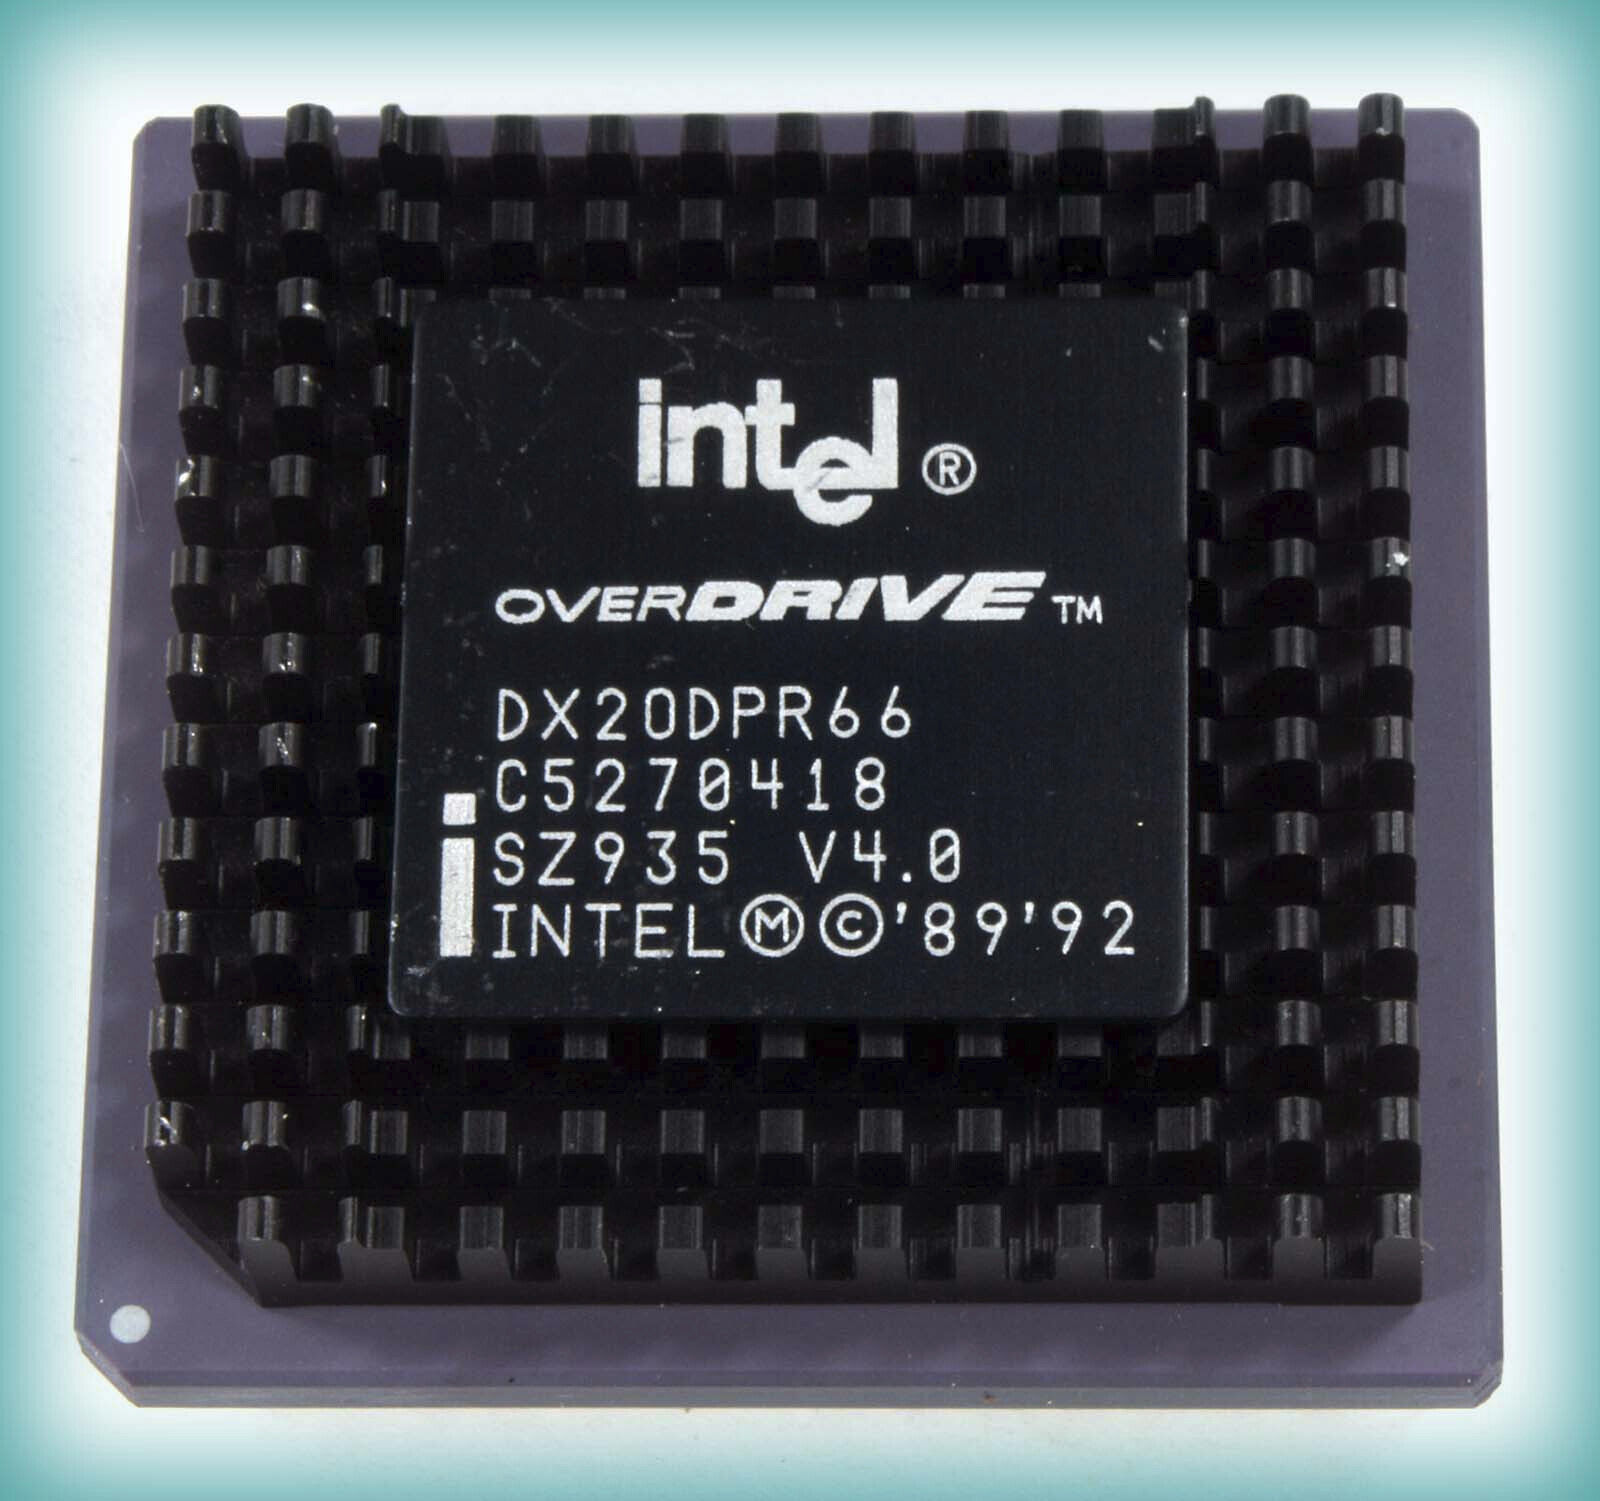 Vintage intel DX20DPR66 OverDrive V4.0 CPU Processor — NEW, NEVER SOLD